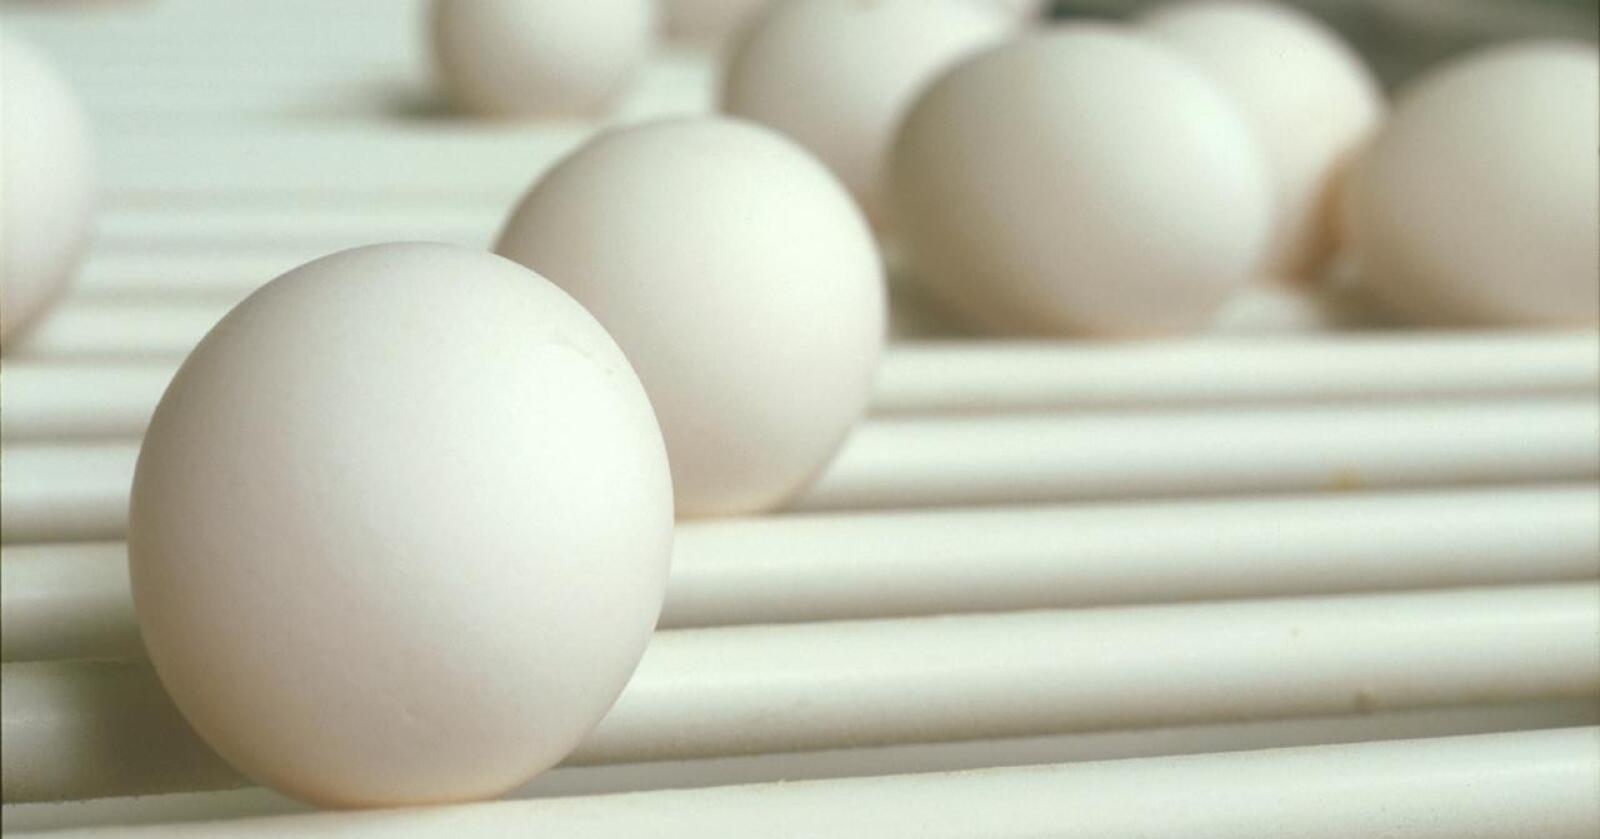 Vil overskuddet til livs: For å redusere overskudd av egg, har Omsetningsrådet vedtatt en forskrift om tilskudd til produsenter som gjennomfører opphold i eggproduksjonen. Foto: Nortura